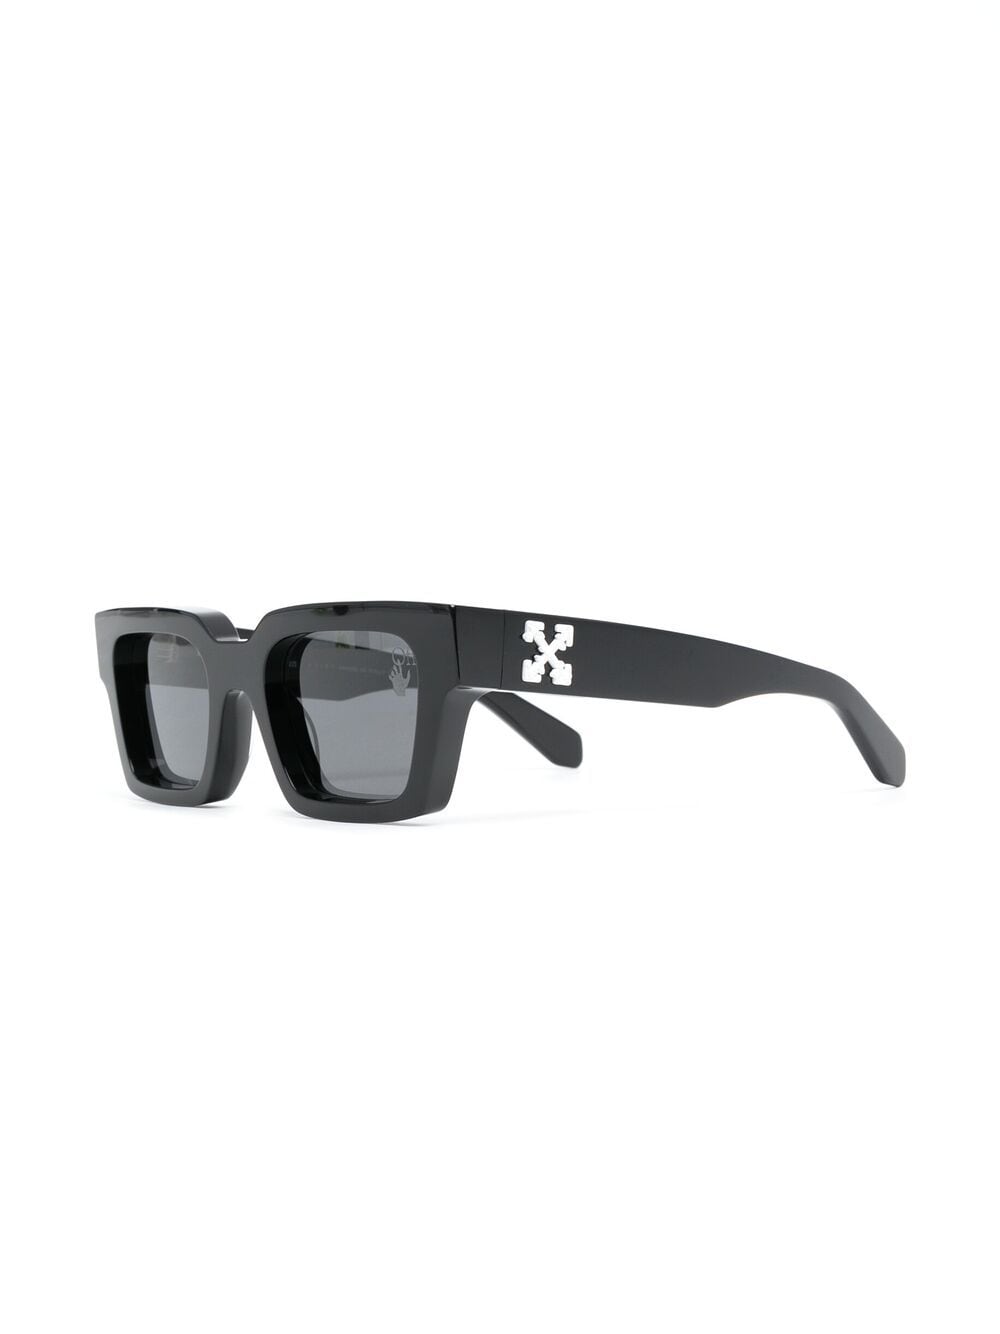 OFF-WHITE Virgil Square Frame Sunglasses Black/White/Grey Men's - US